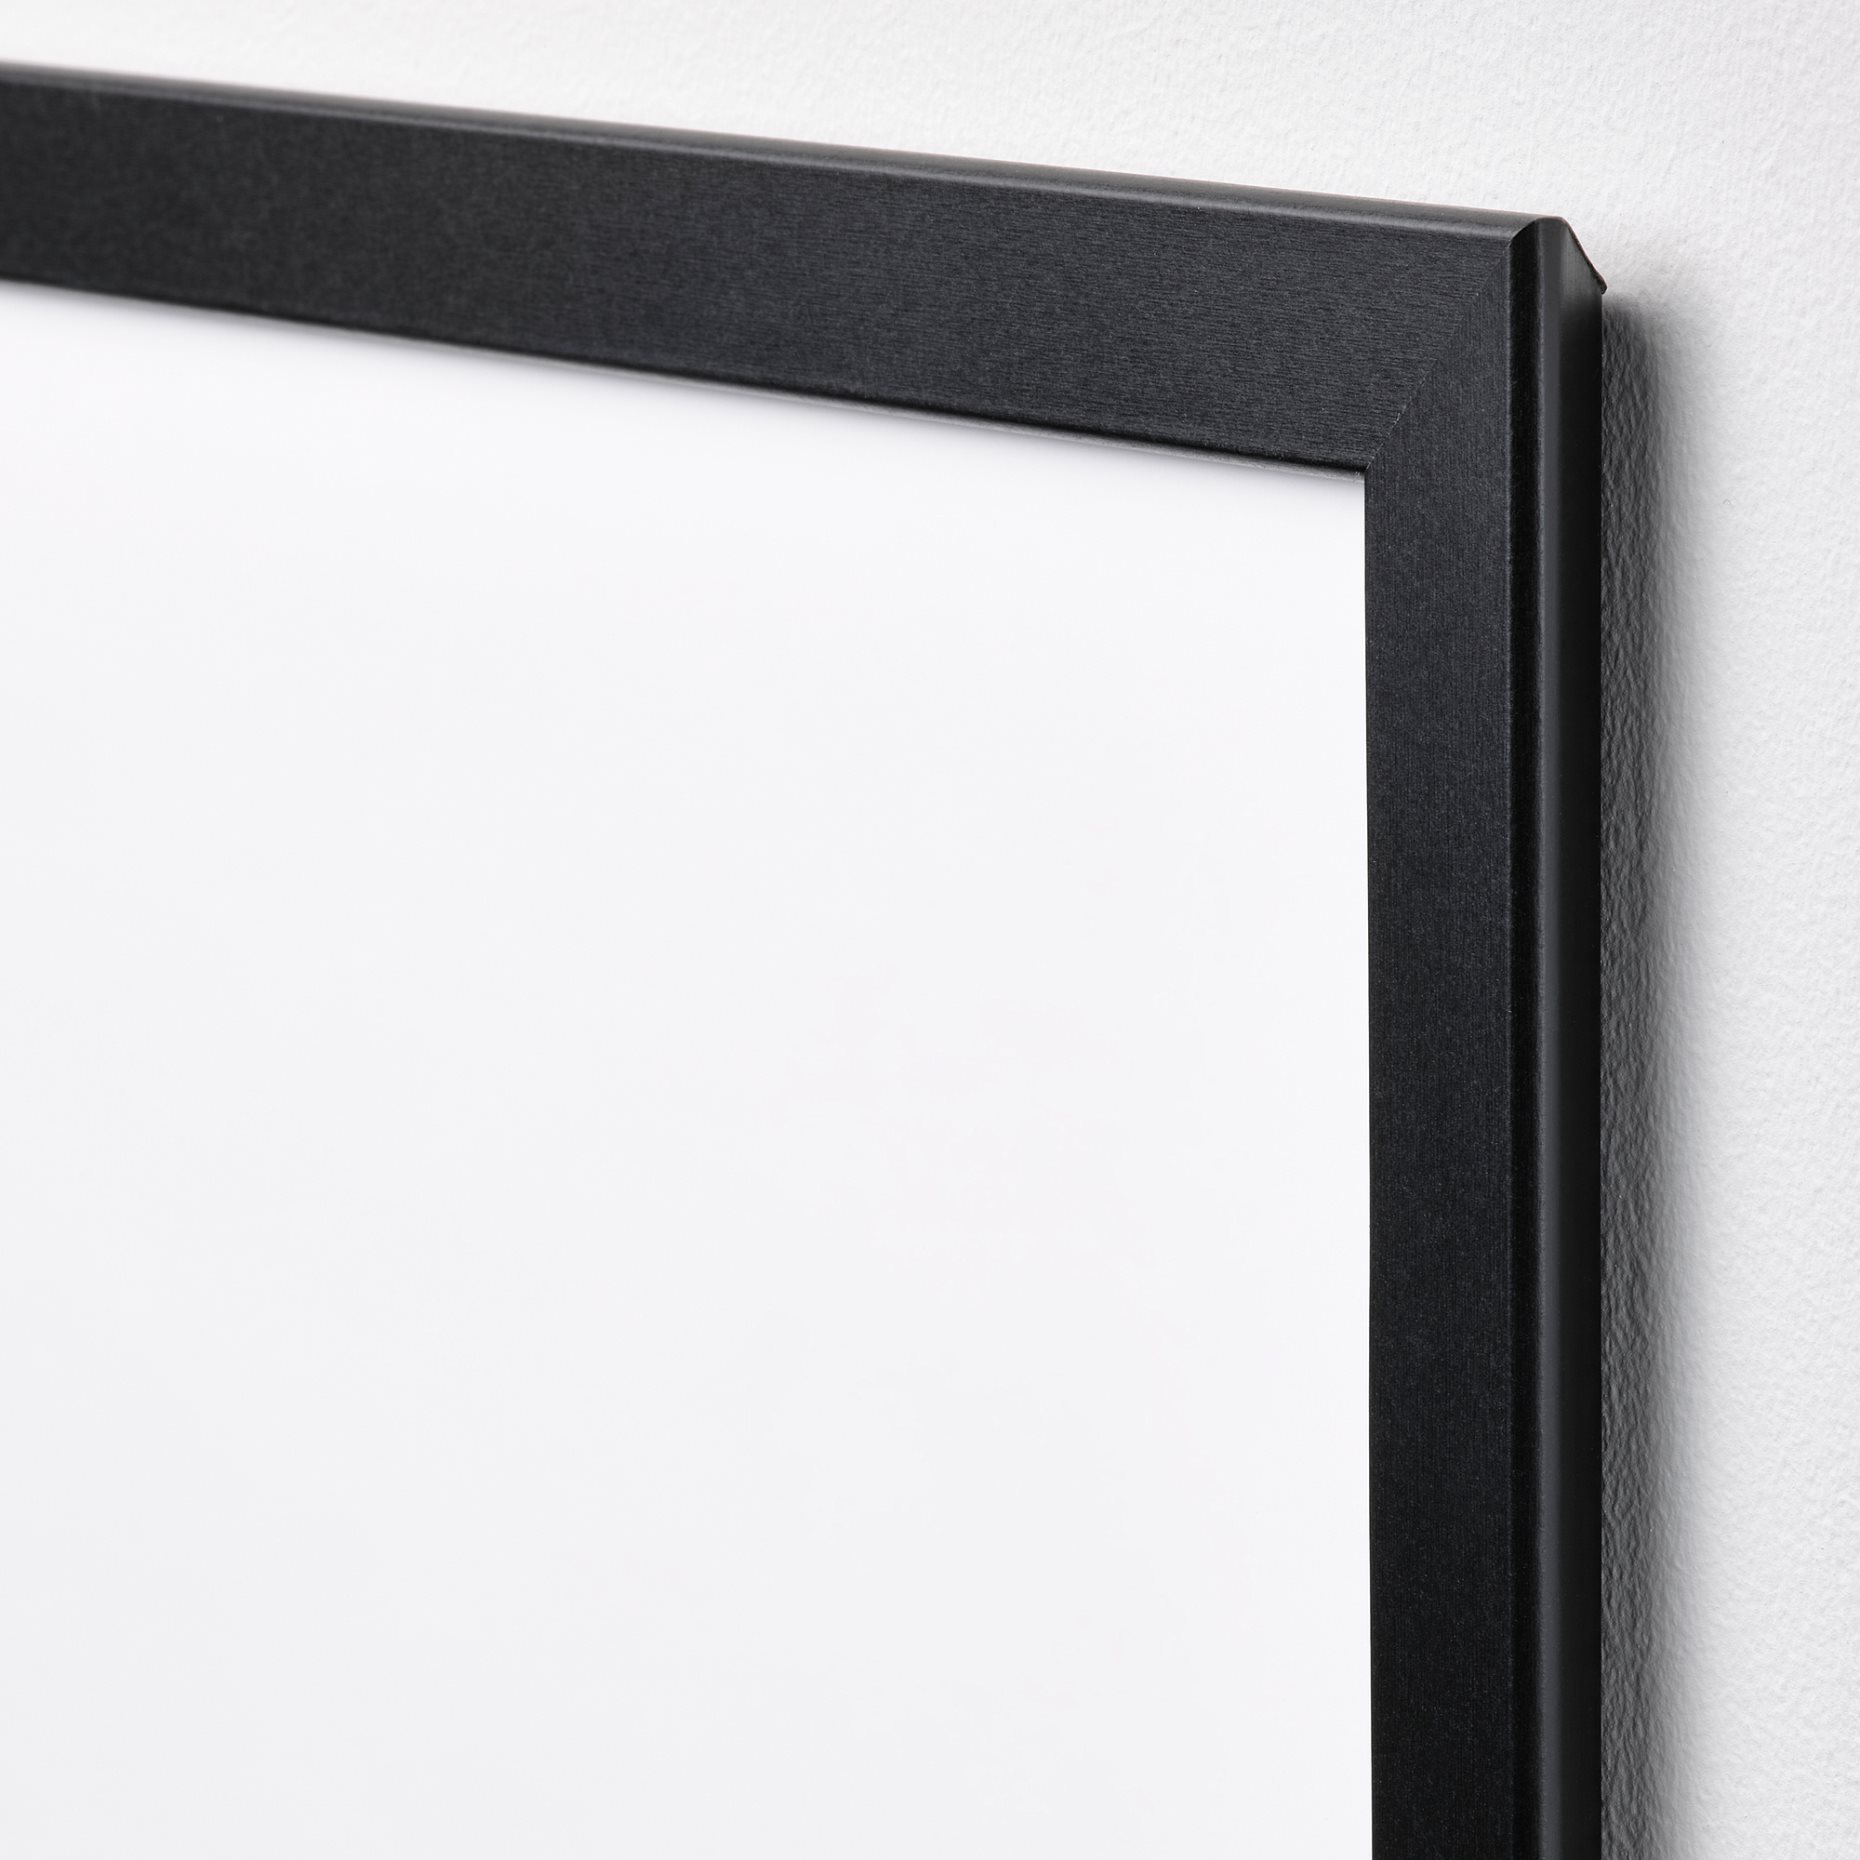 FISKBO, frame, 21x30 cm, 302.956.56